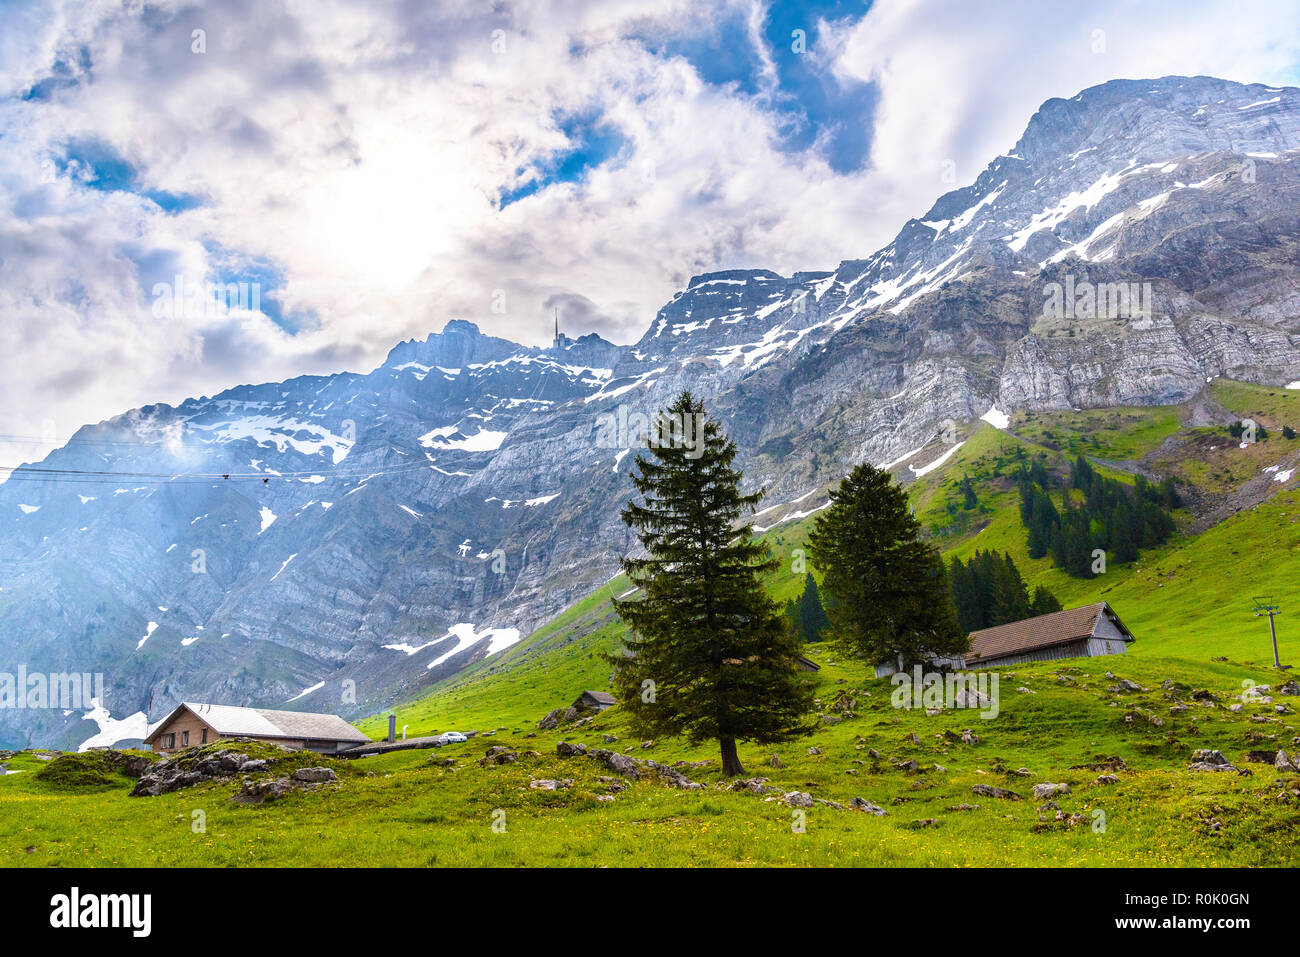 Alps mountains and fields, Schoenengrund, Hinterland, Appenzell Ausserrhoden Switzerland Stock Photo